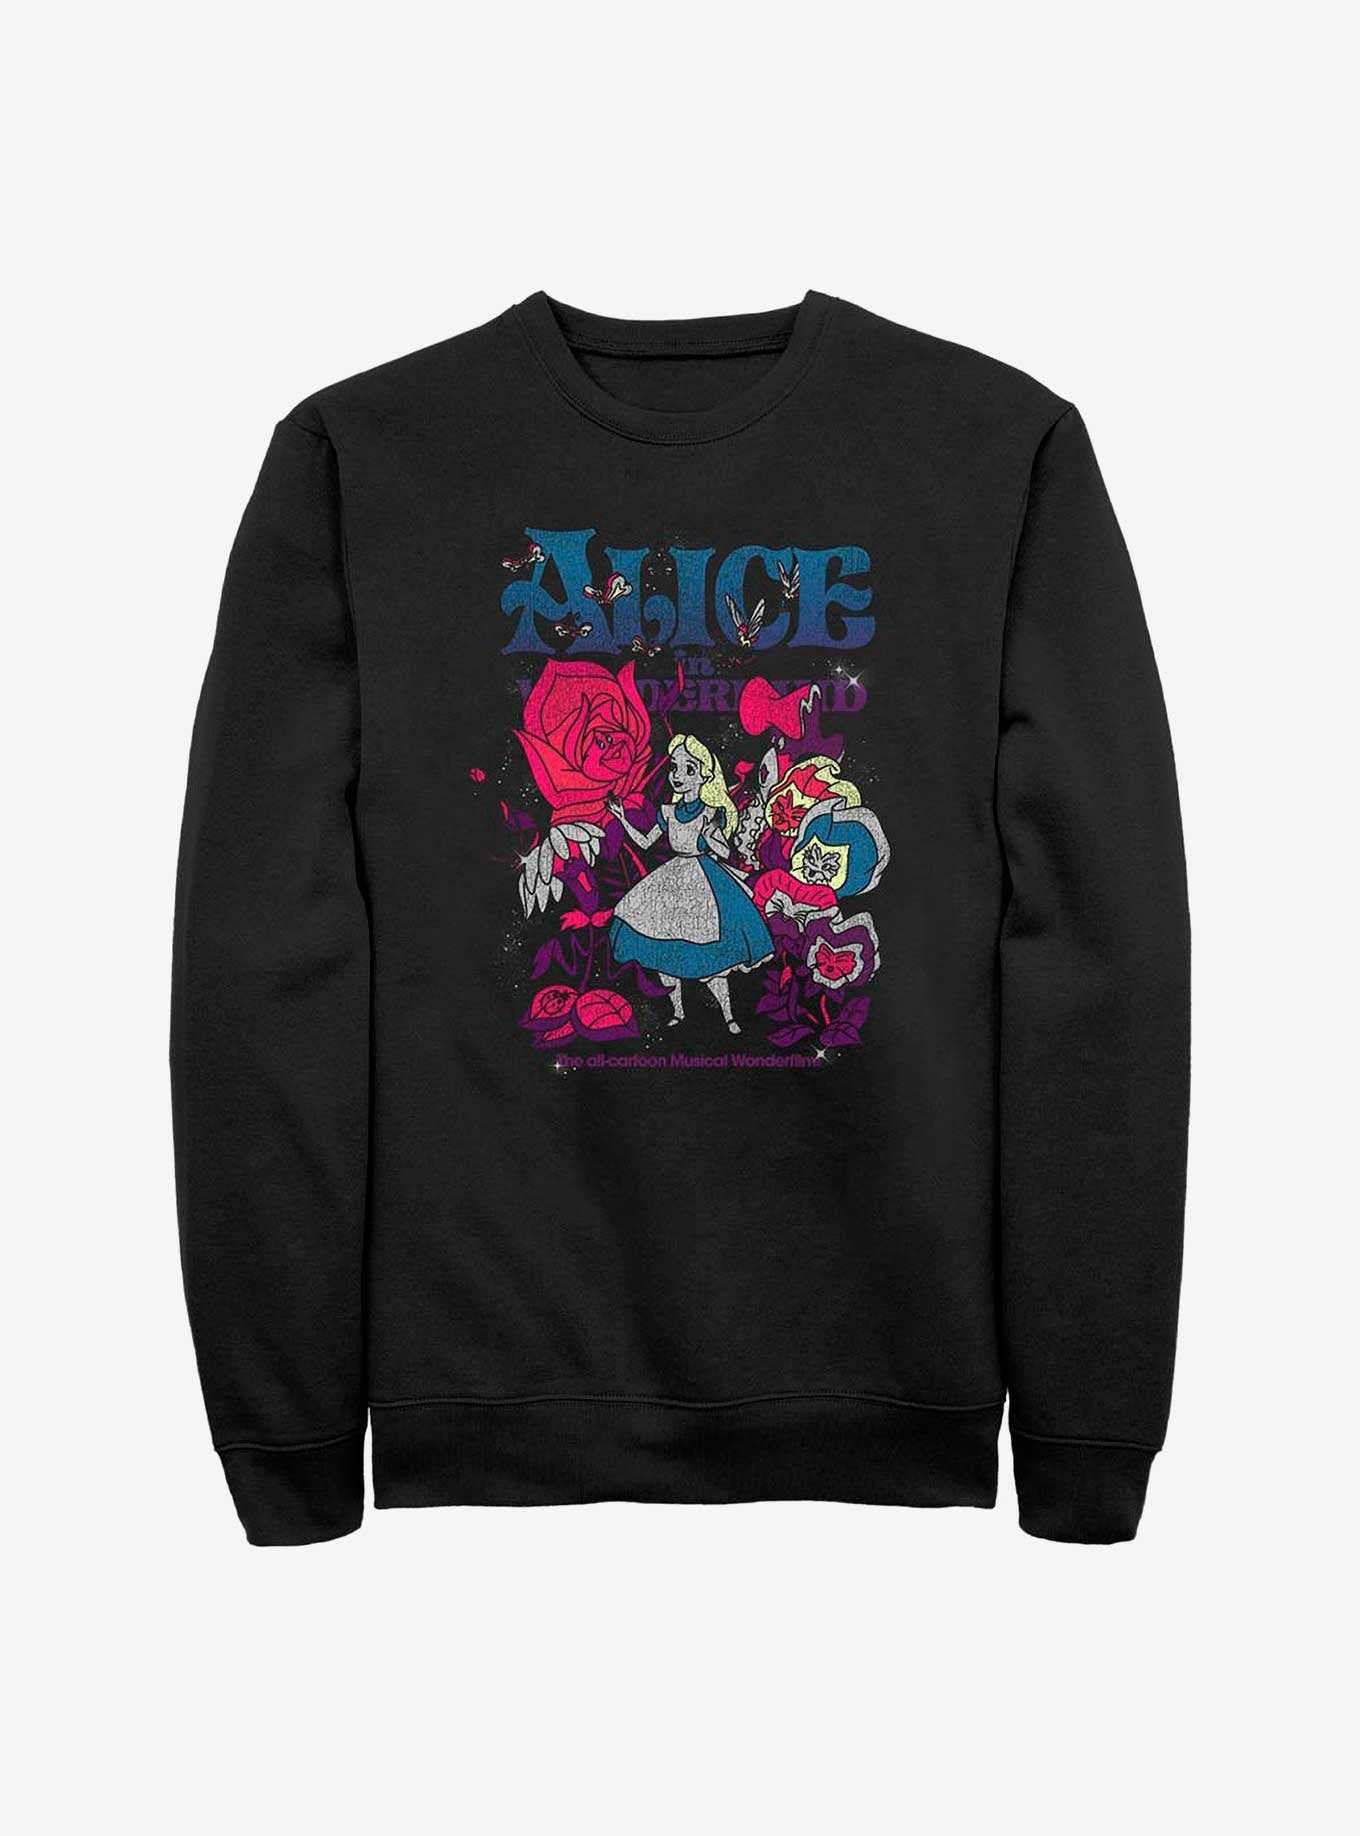 Disney Alice in Wonderland Technicolor Wonderland Sweatshirt, , hi-res